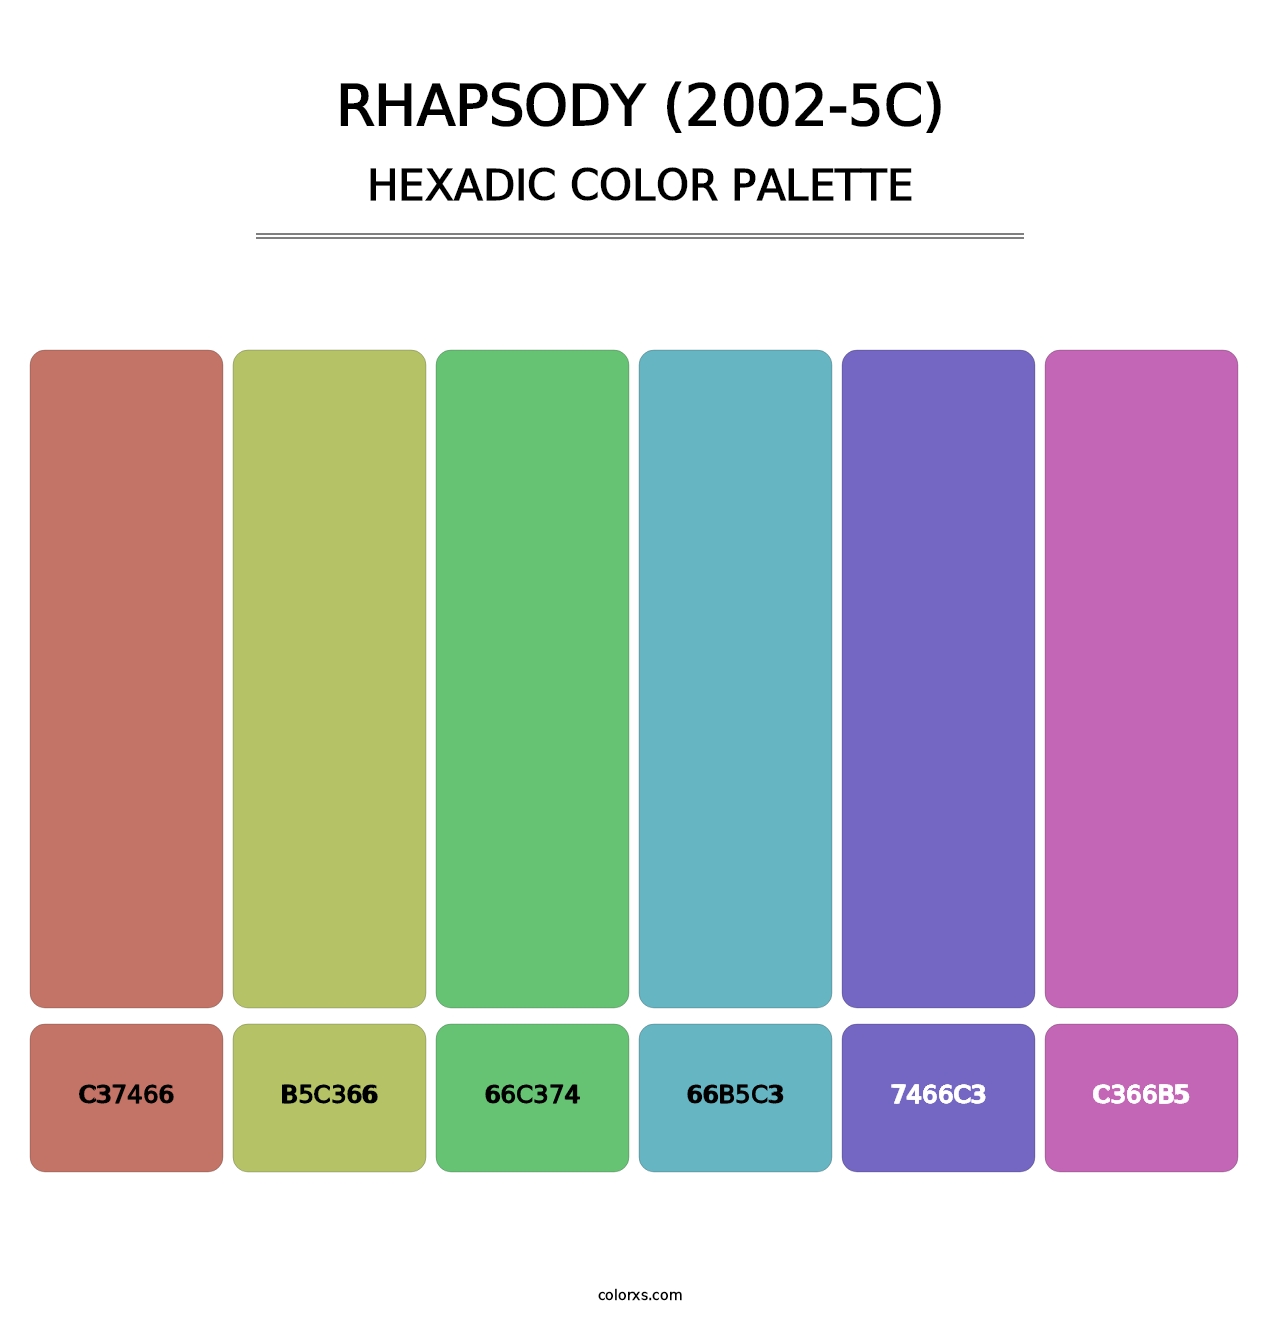 Rhapsody (2002-5C) - Hexadic Color Palette